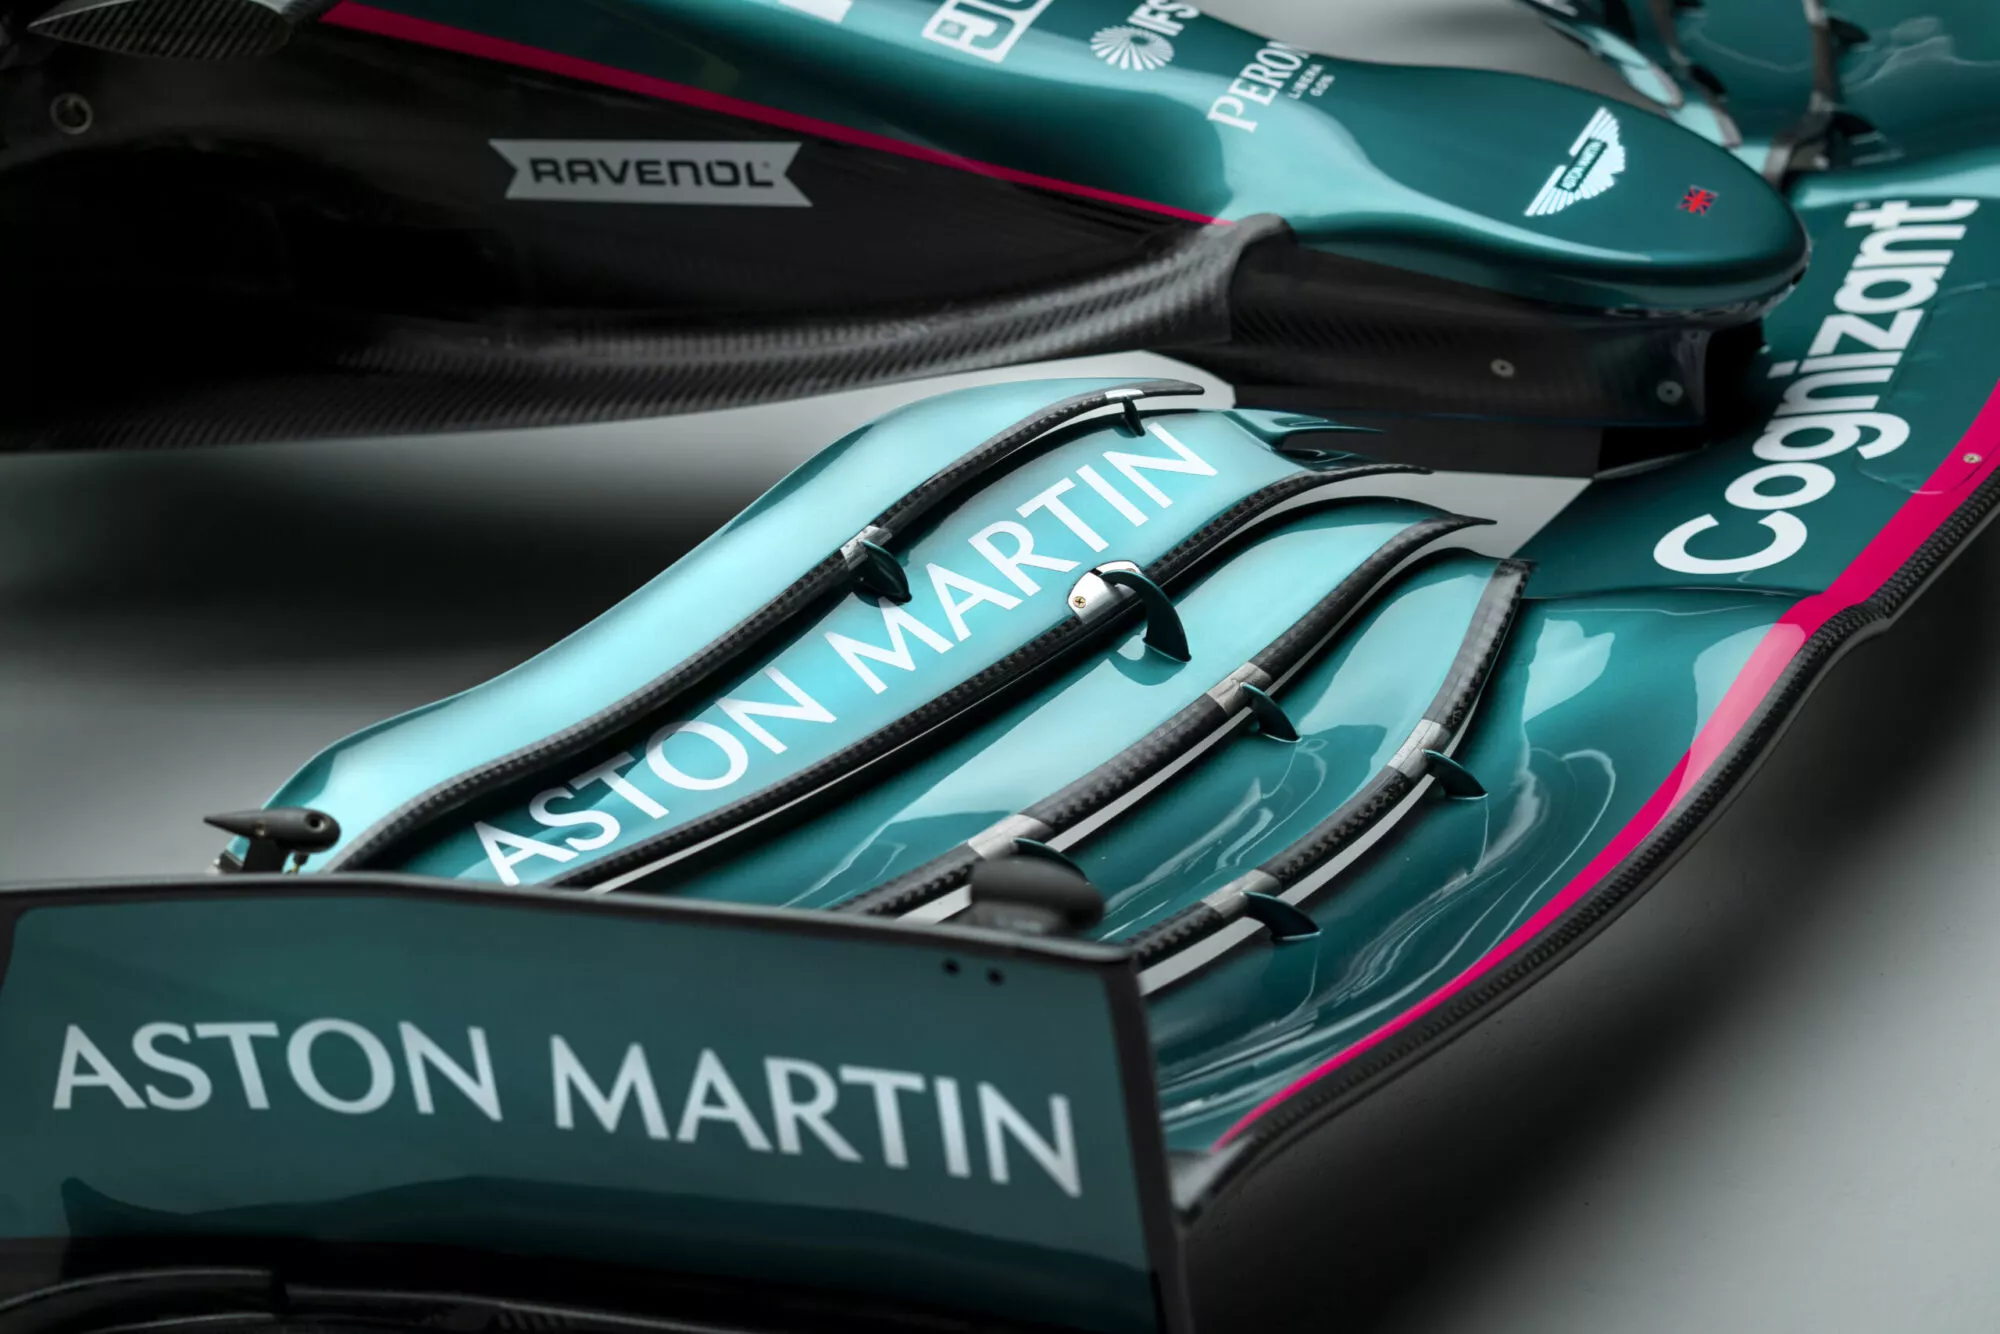 Aston Martin begins important new era with return to Formula One™ – Aston  Martin